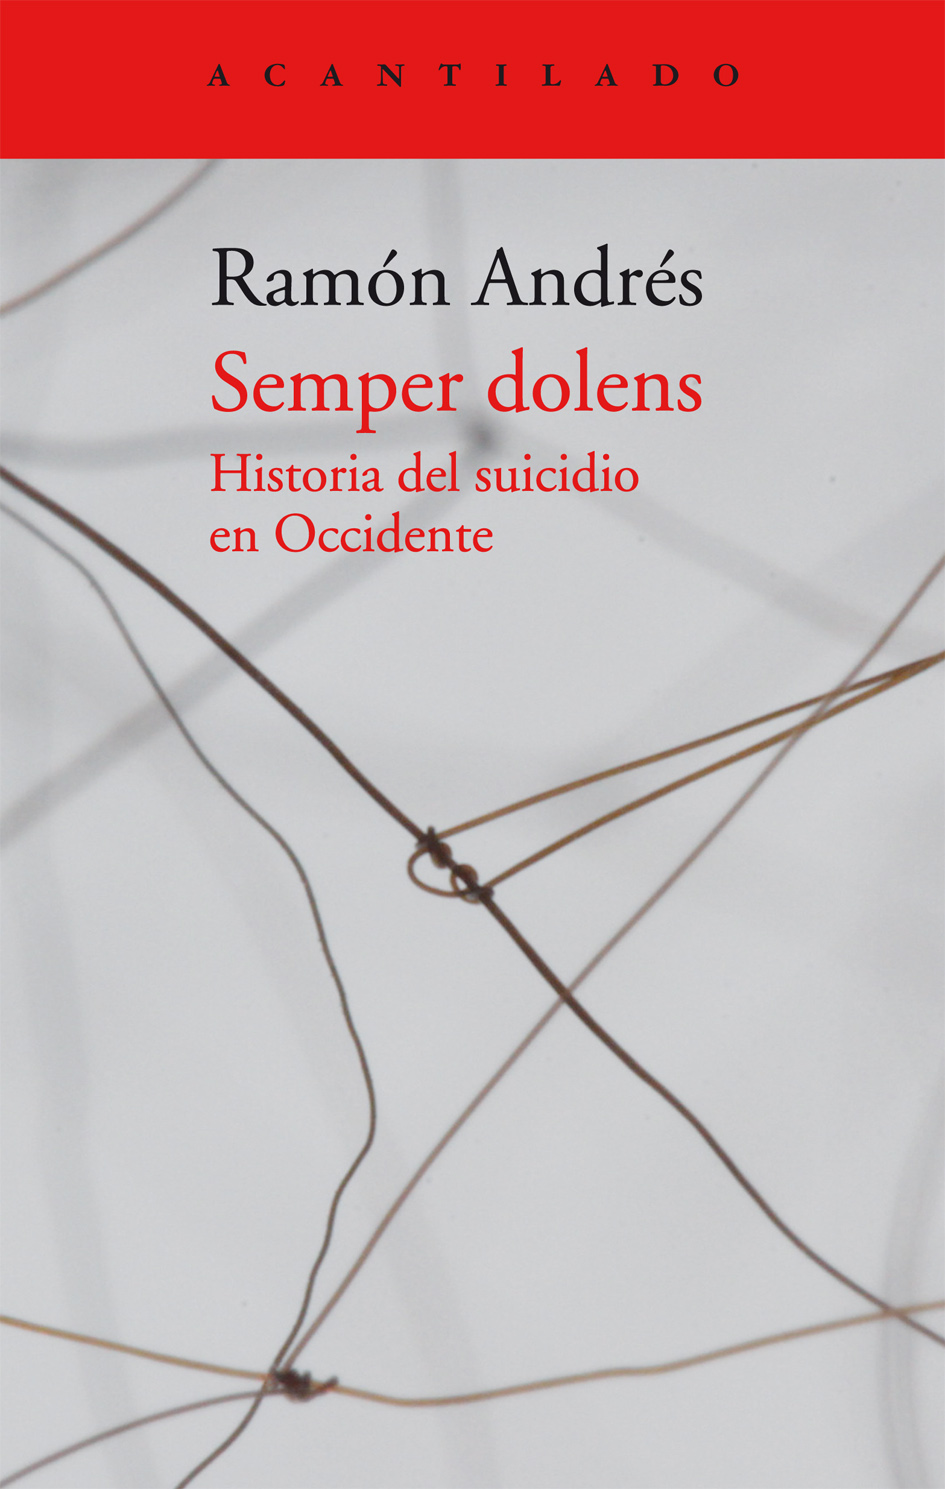 El libro nuestro de cada martes: Semper dolens, historia del suicidio en occidente, de Ramón Andrés